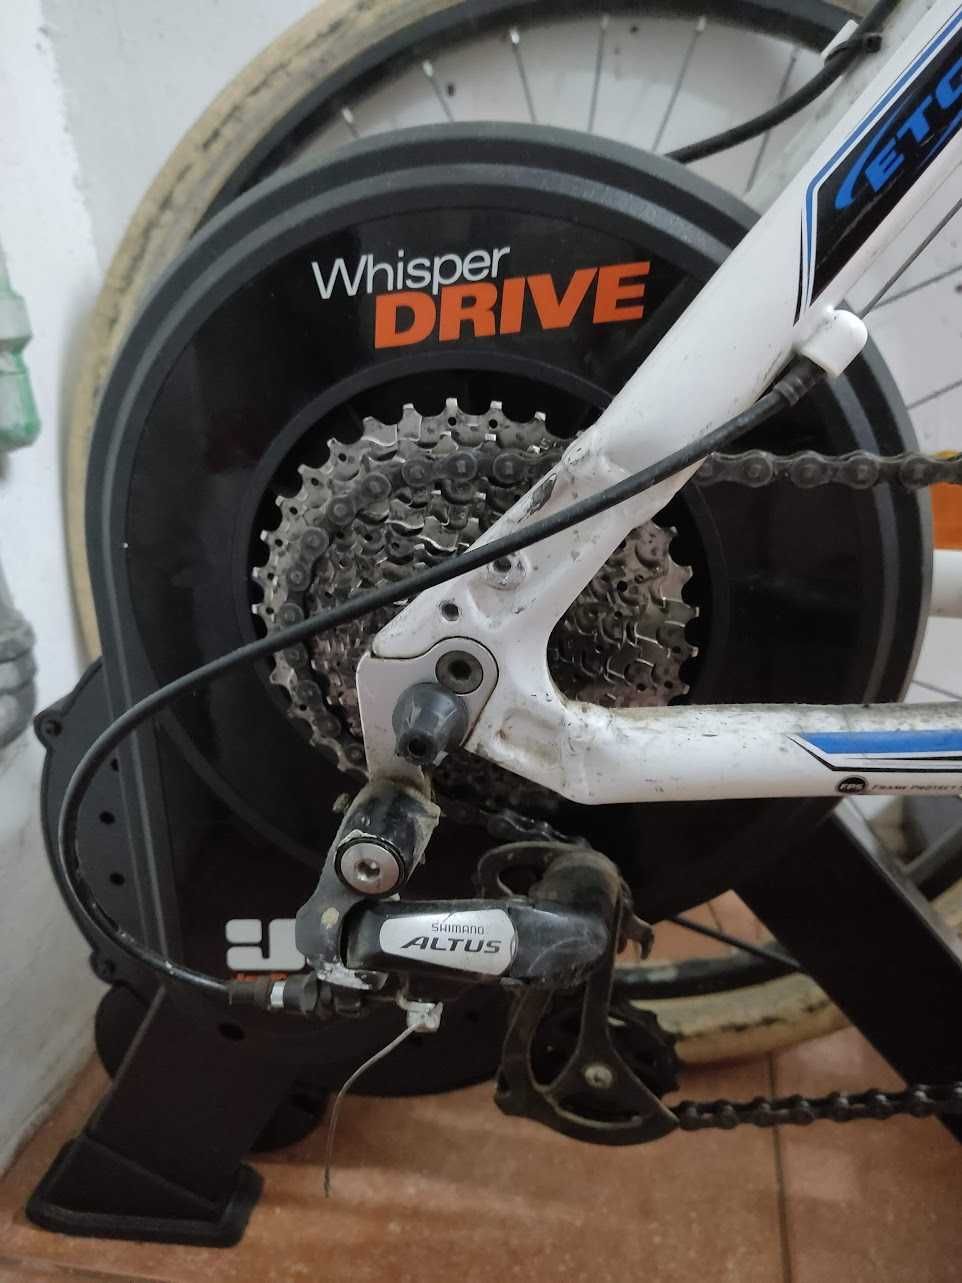 Rolo de treino de bicicleta Jetblack Whisper Drive 11v